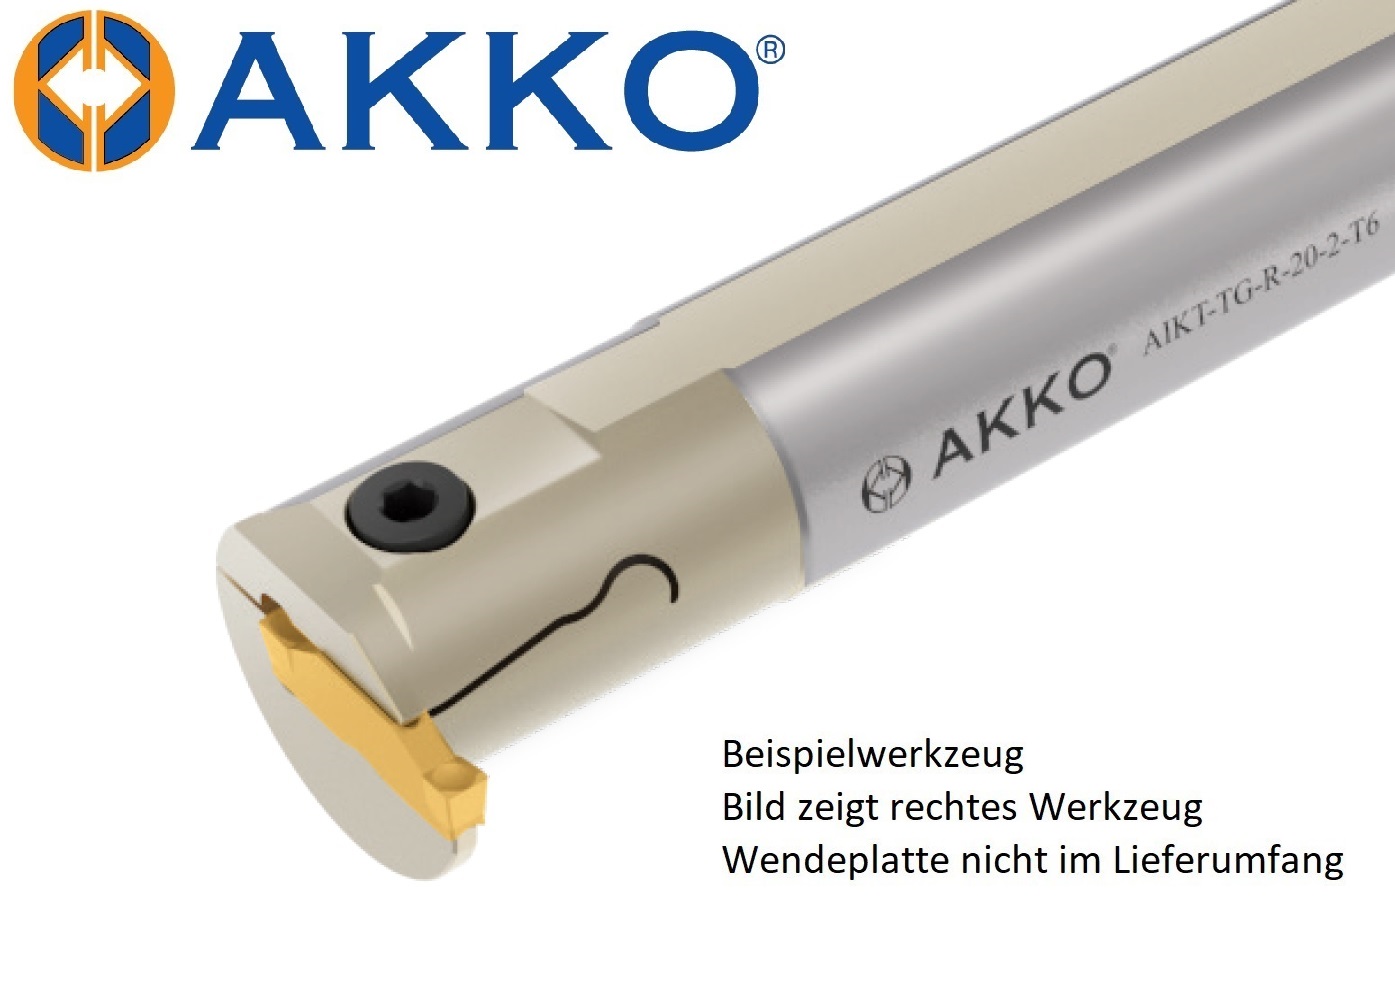 AKKO-Innen-Stechhalter, kompatibel mit Tungaloy-Stechplatte DGIM2-020
Schaft-ø 20, ohne Innenkühlung, links